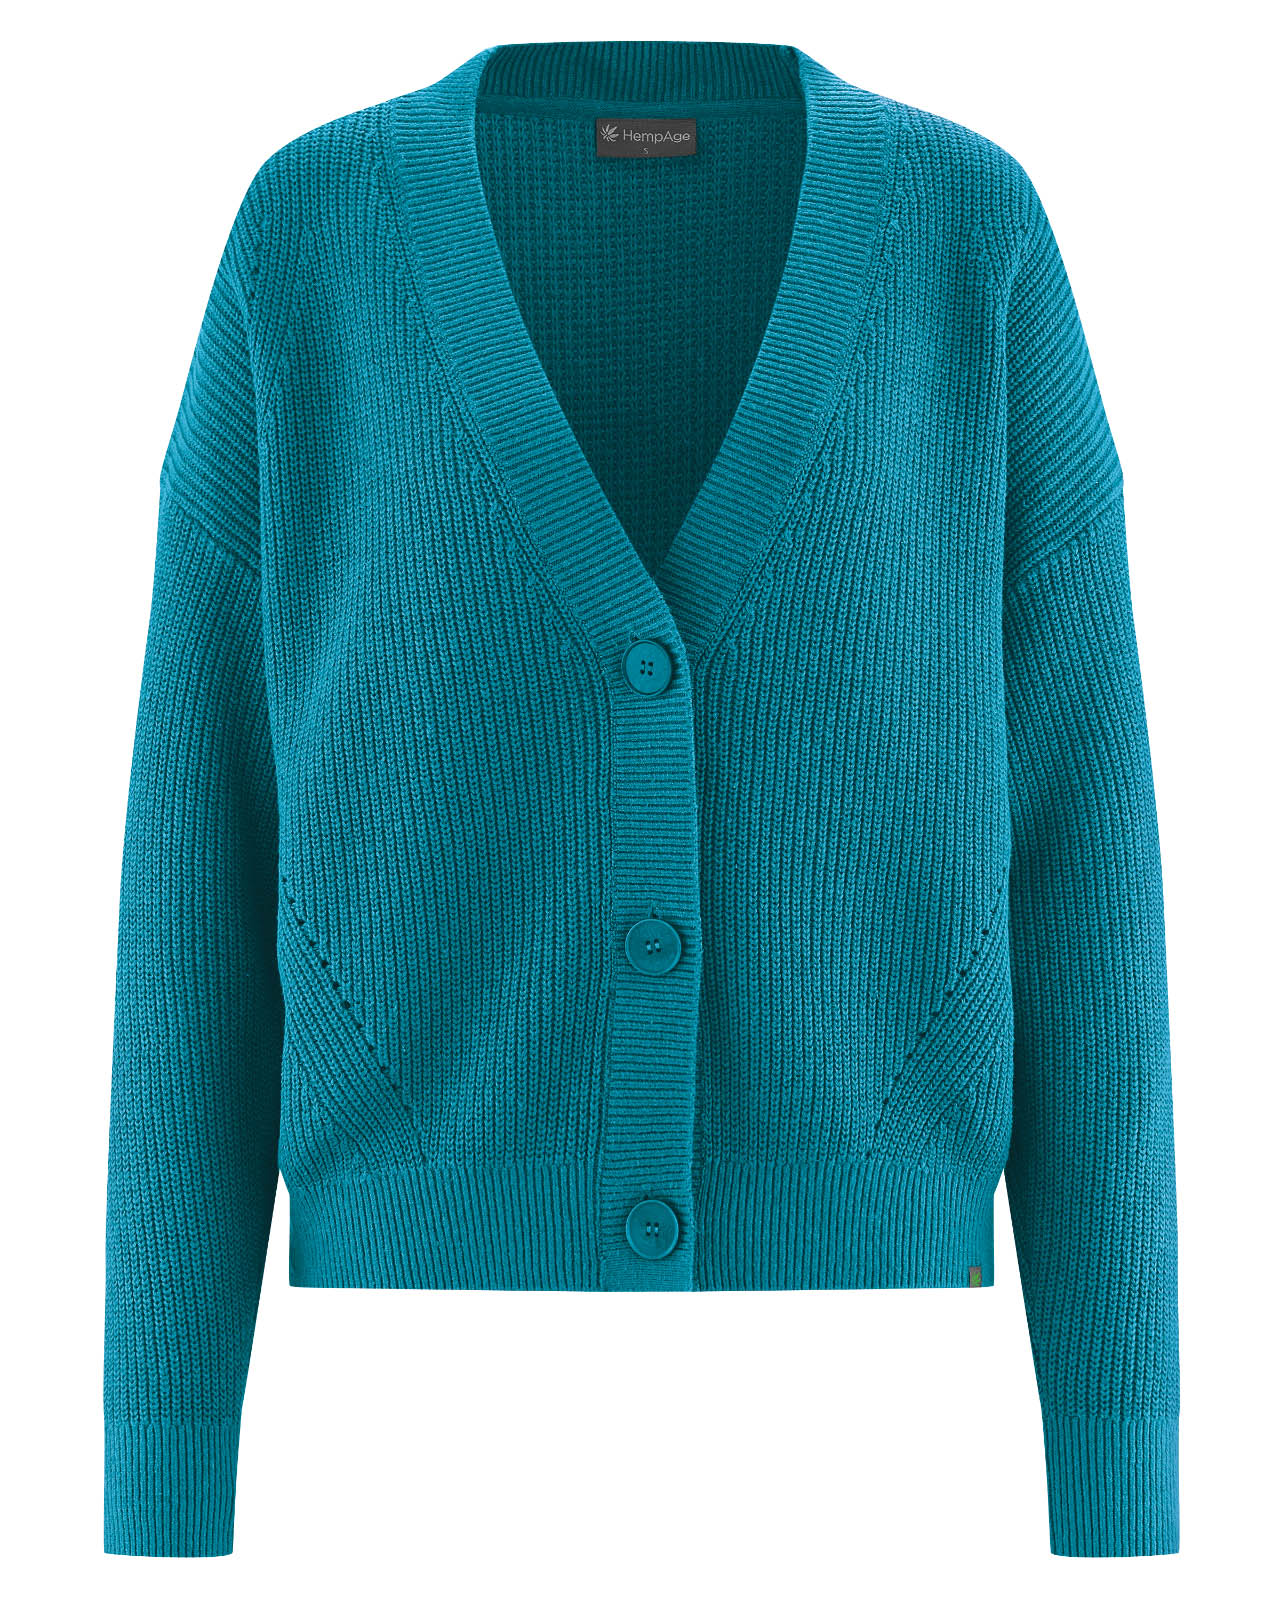 LZ338 Jacket, v-neck, knit